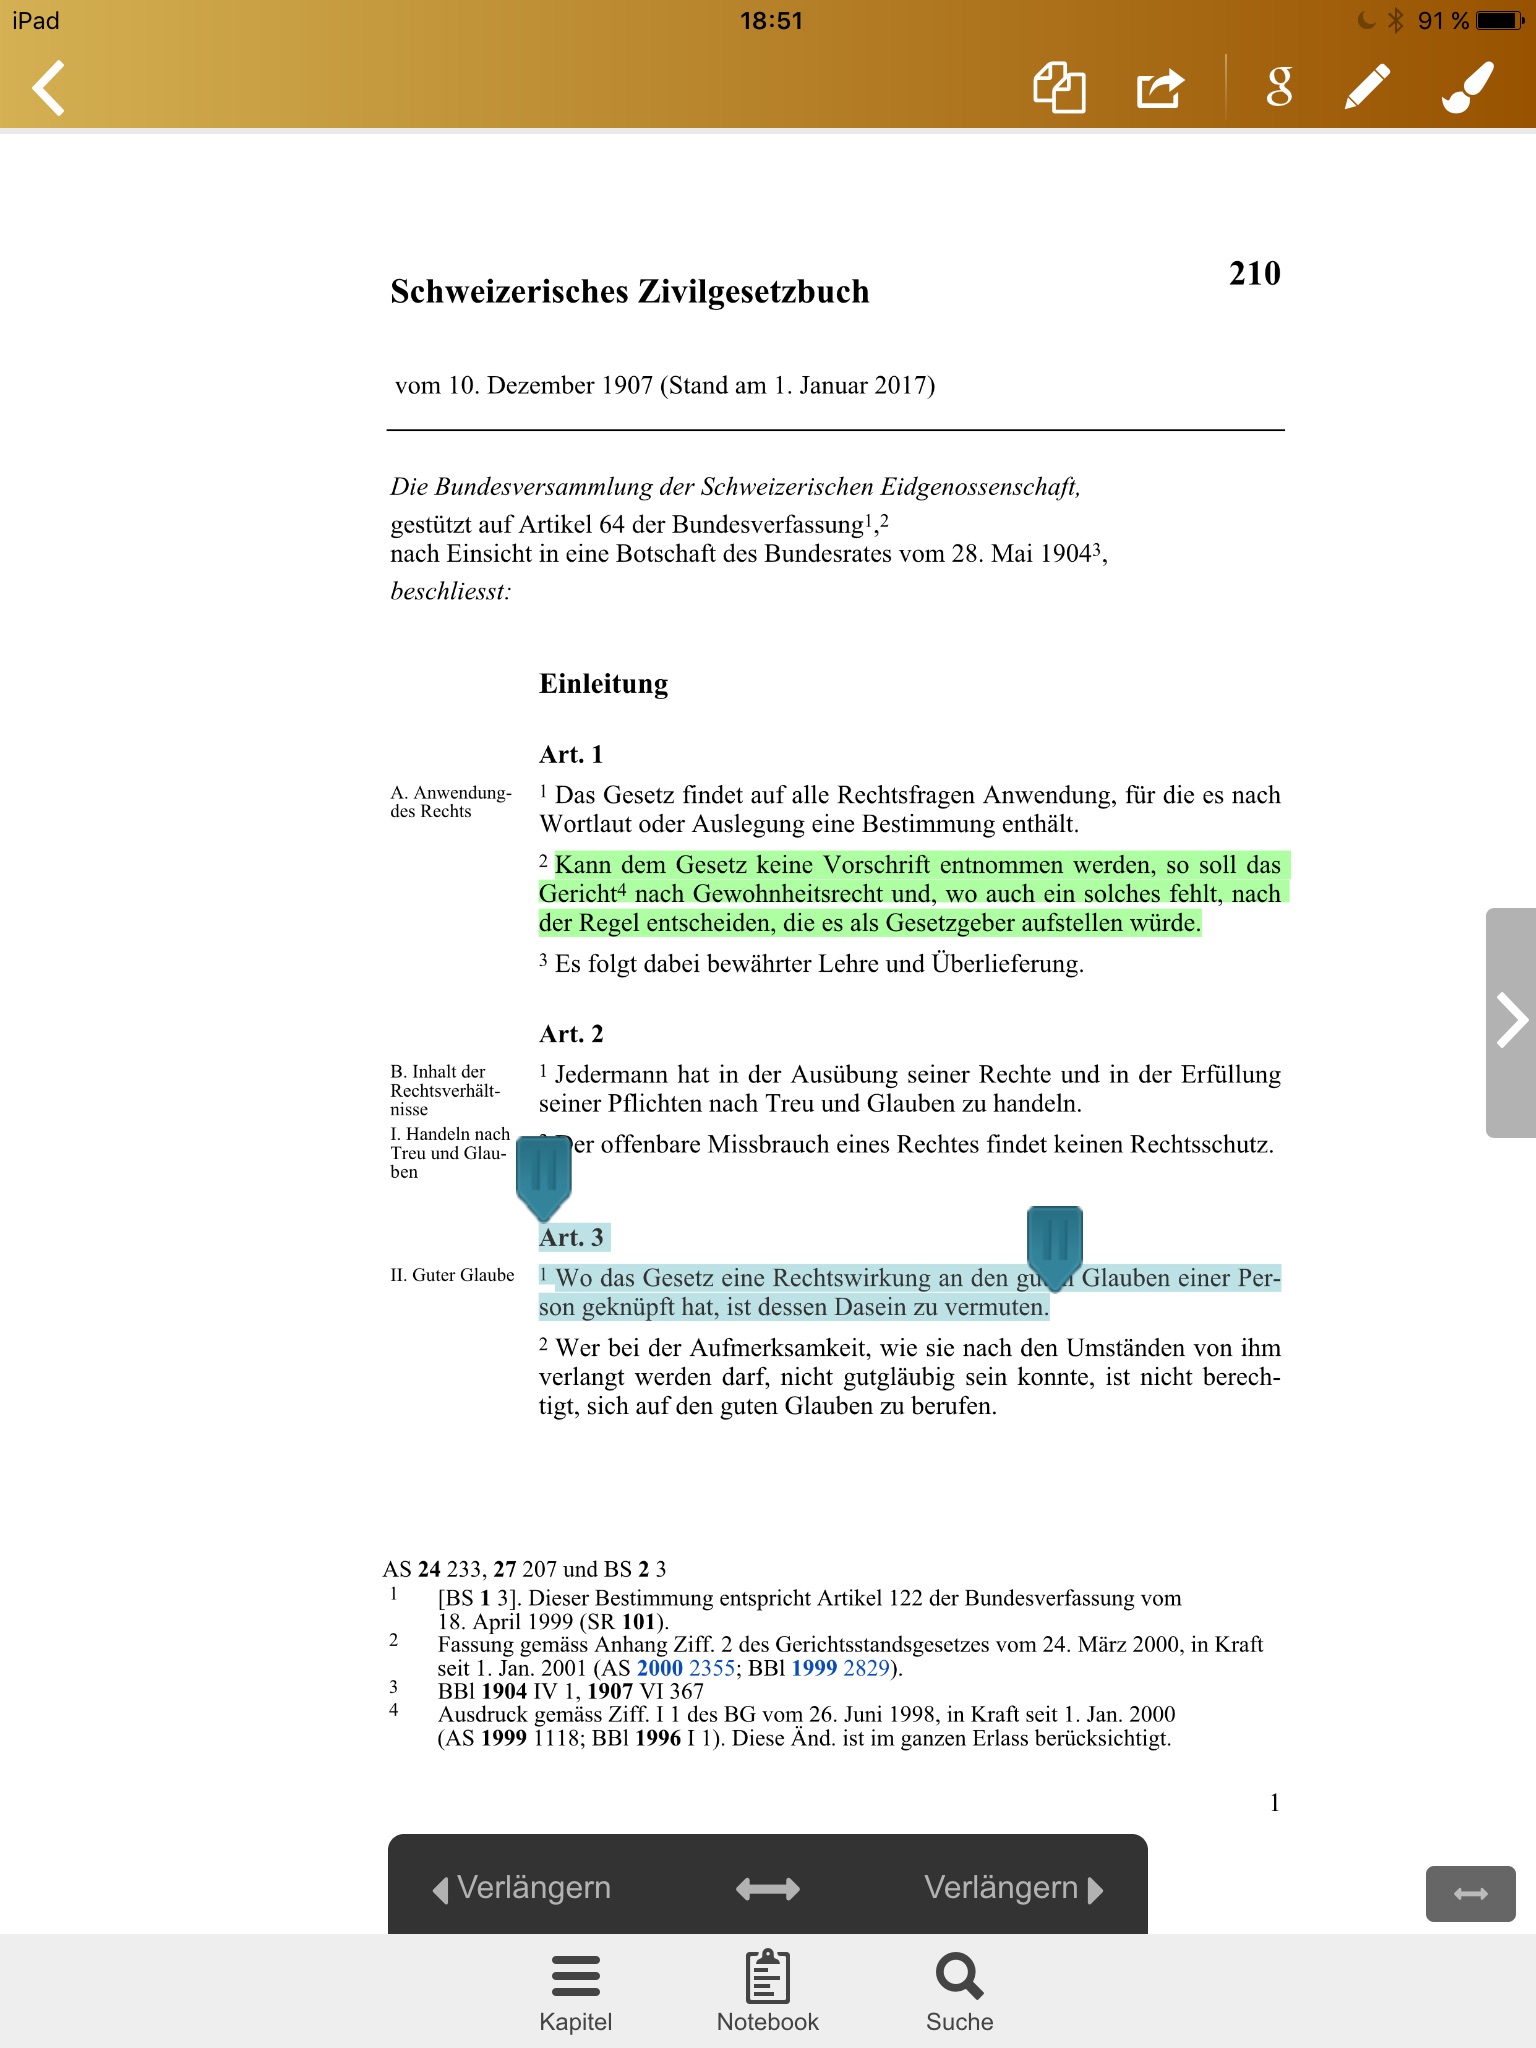 ZGB - Schweizerisches Zivilgesetzbuch screenshot 3